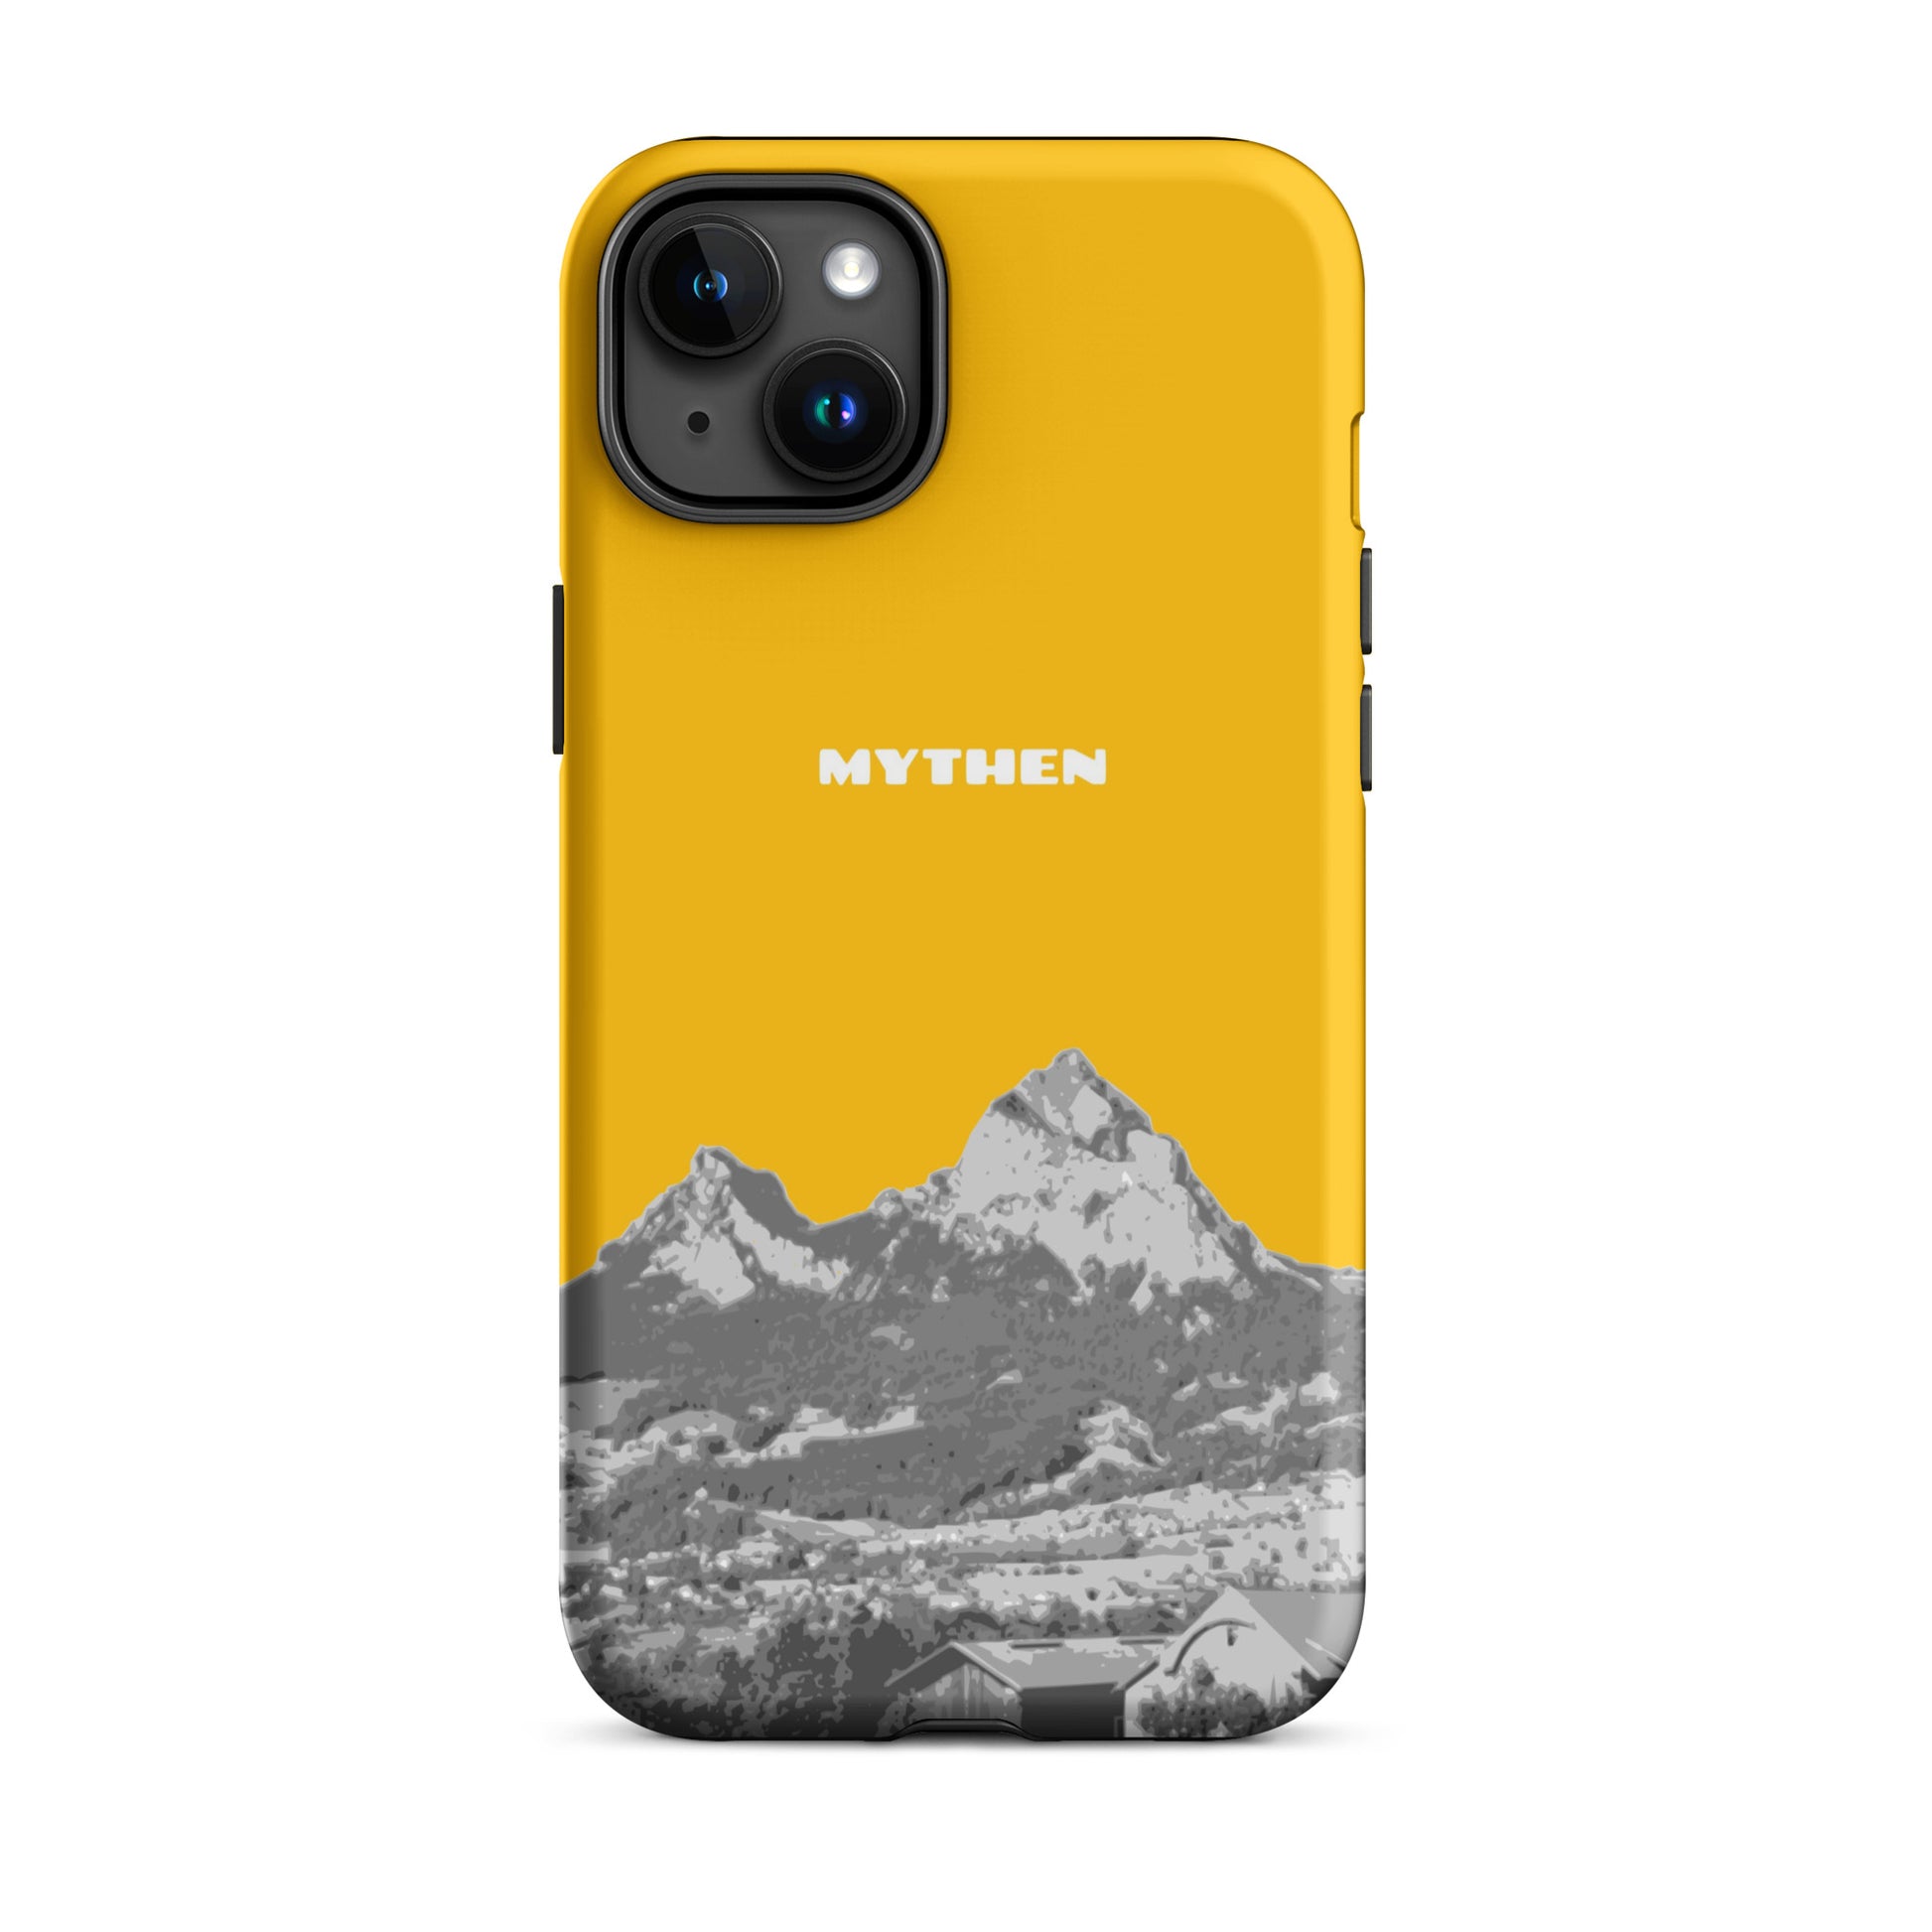 Hülle für das iPhone 15 Plus von Apple in der Farbe Goldgelb, dass den Grossen Mythen und den Kleinen Mythen bei Schwyz zeigt. 